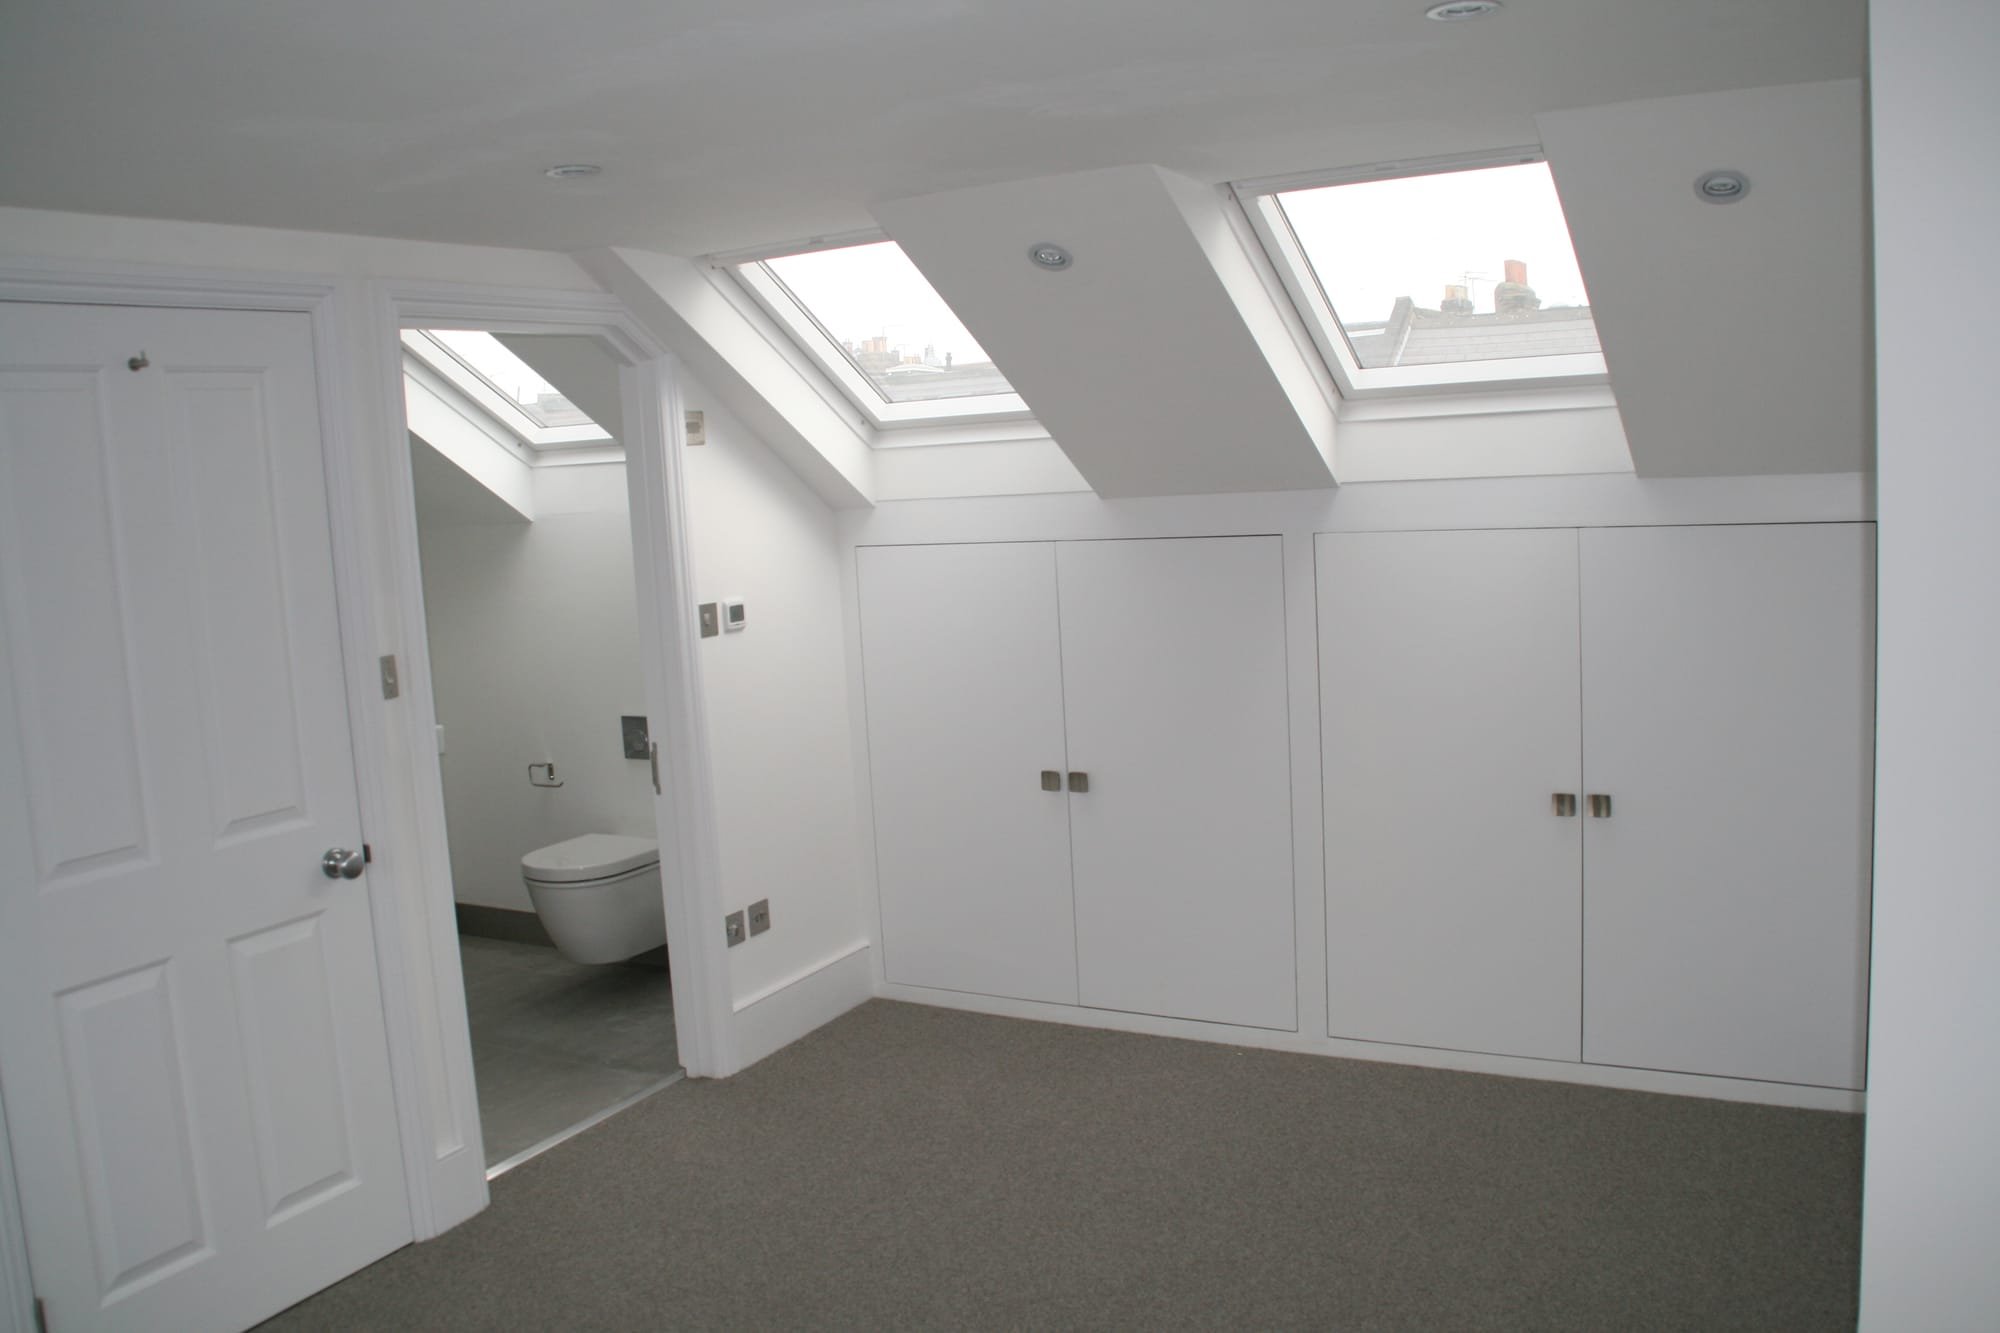 Bedroom eaves storage in this SW11 London loft with velux in bedroom and en-suite bathroom